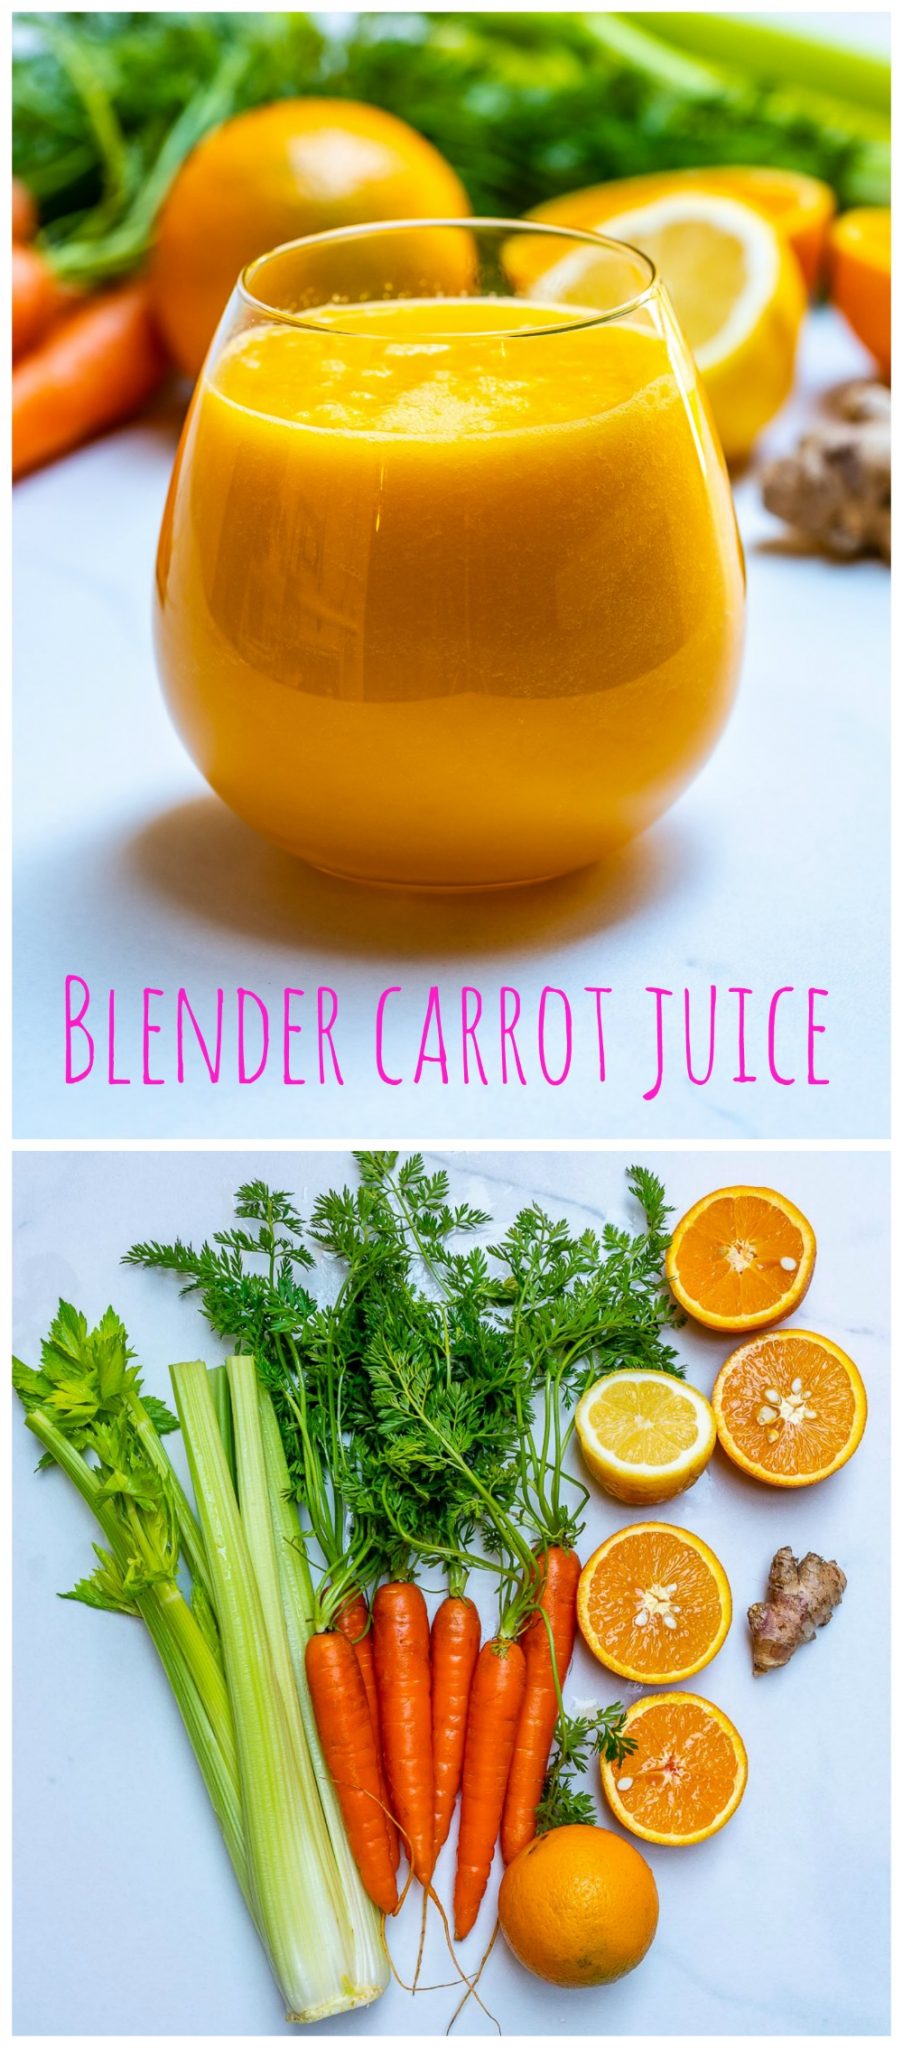 Blender carrot juice